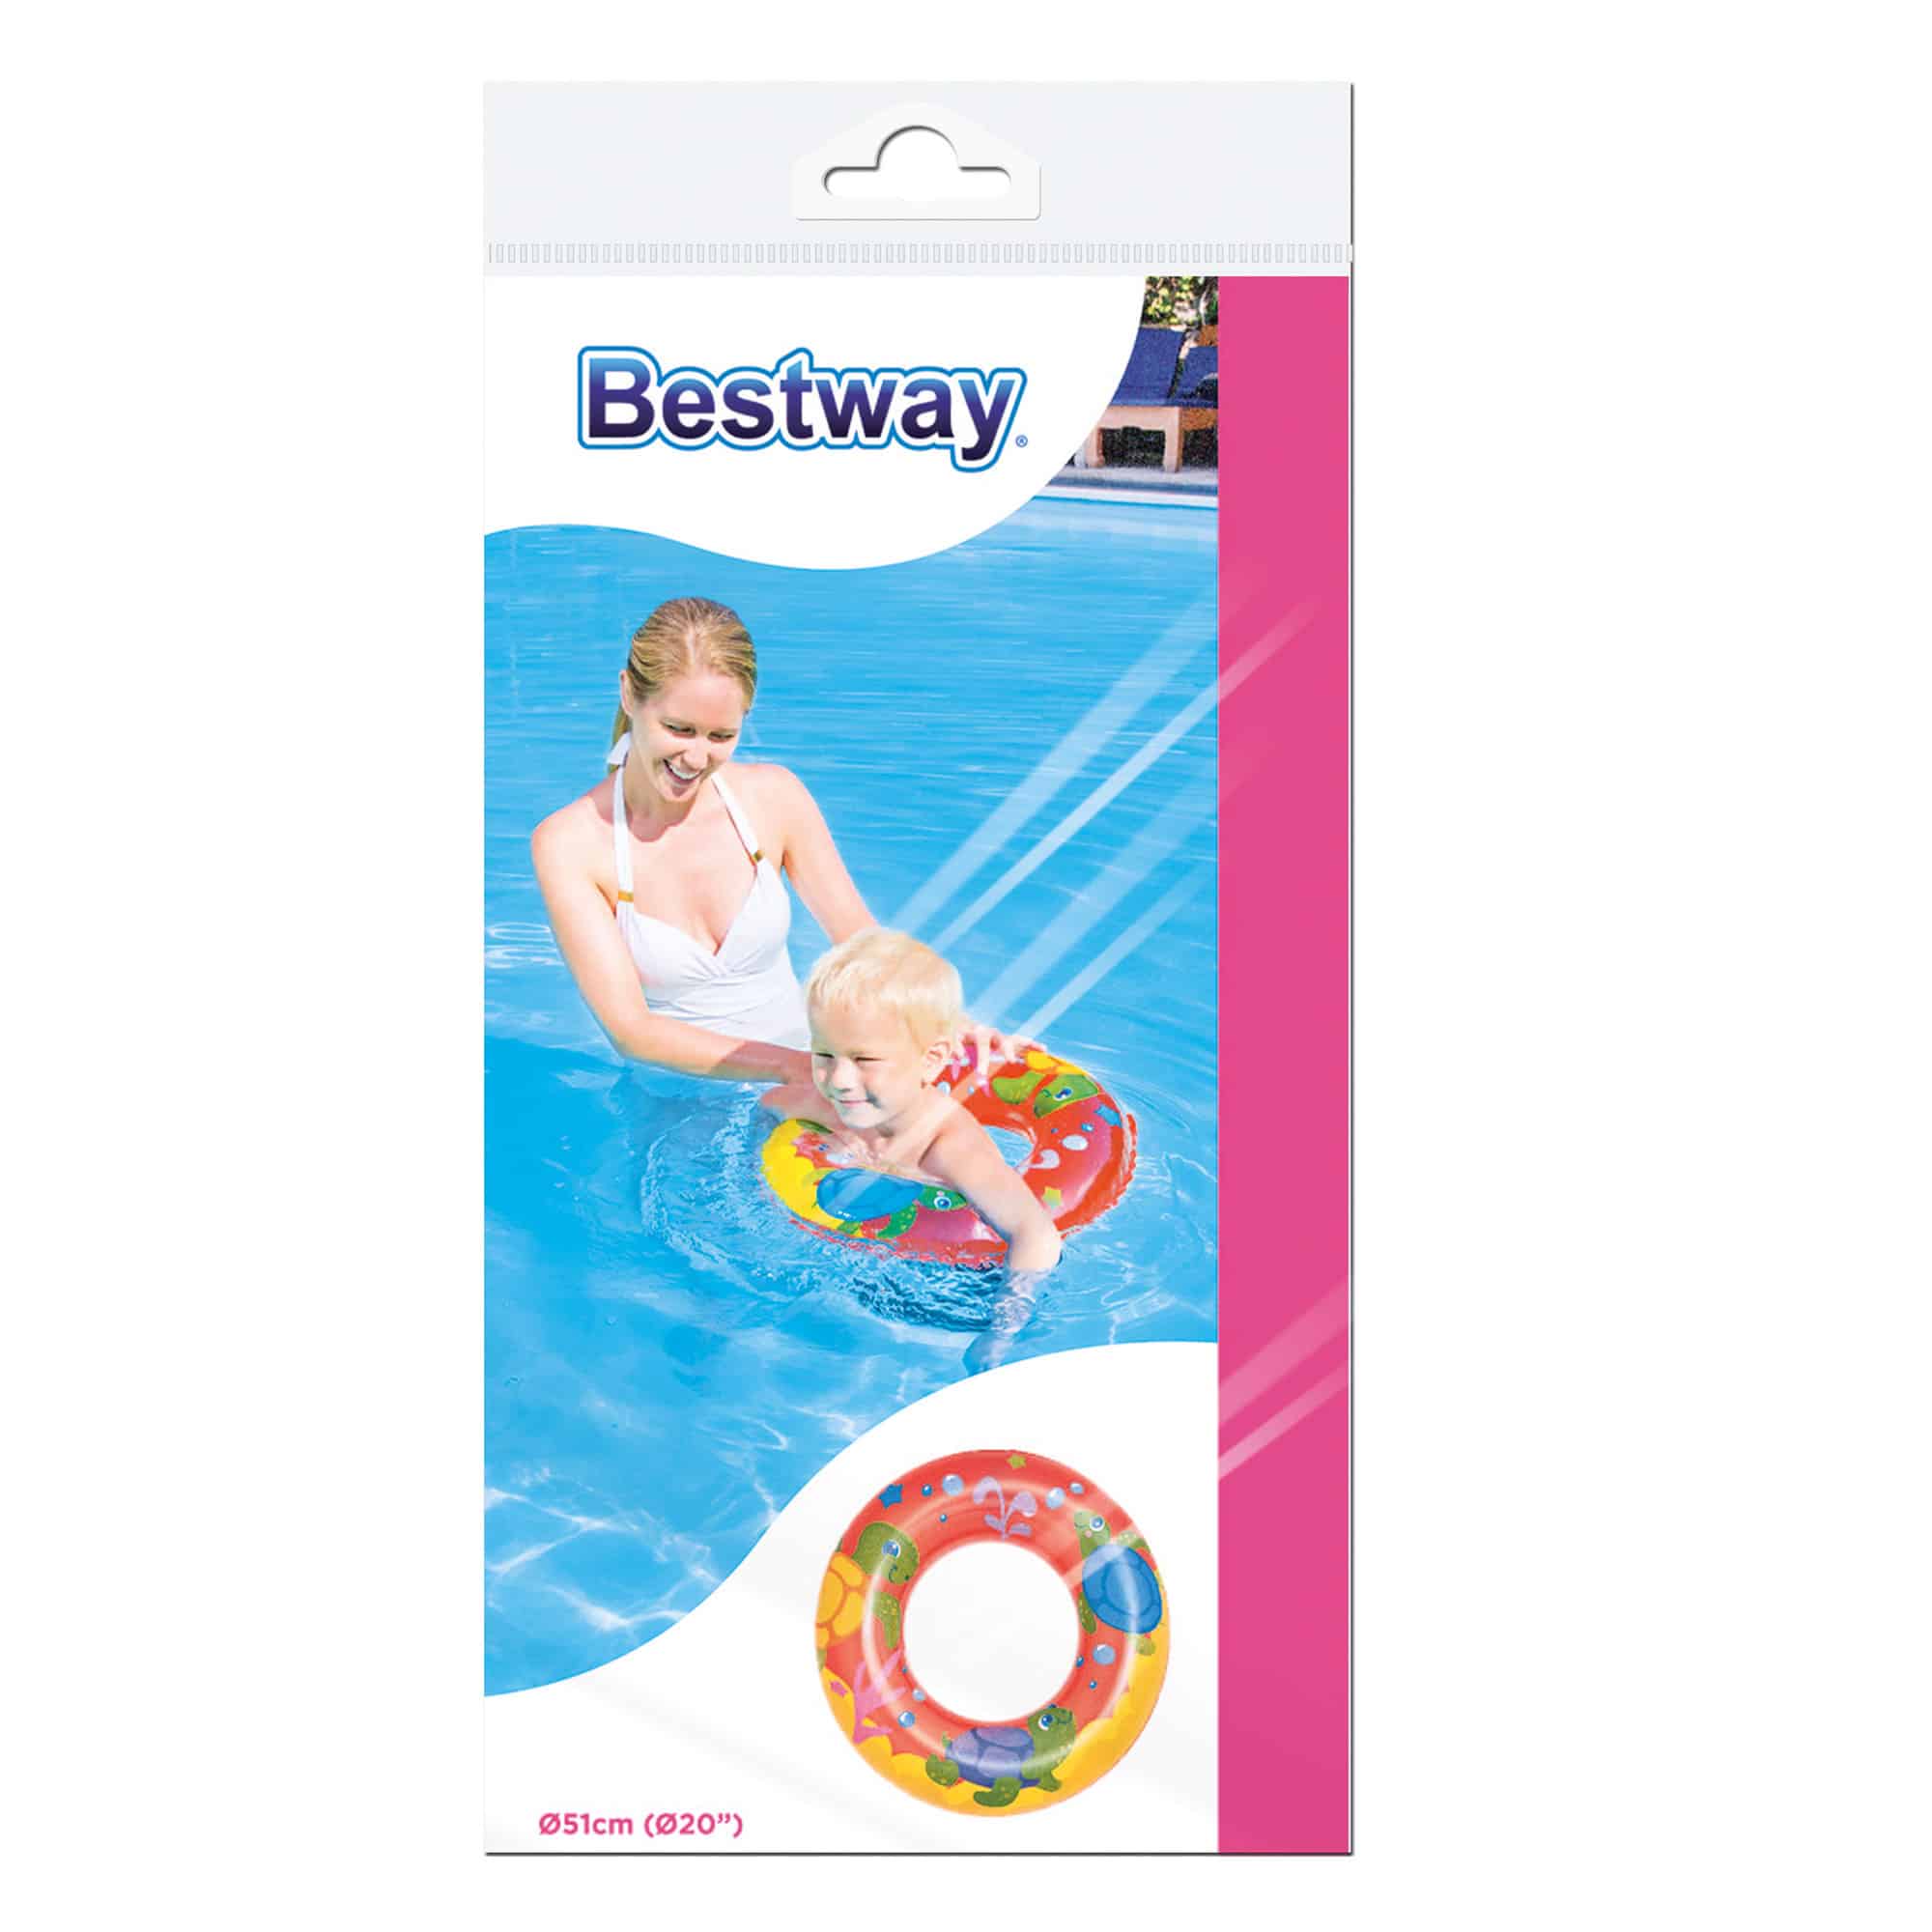 Bestway® - Sea Adventures 51cm Swim Ring - Red